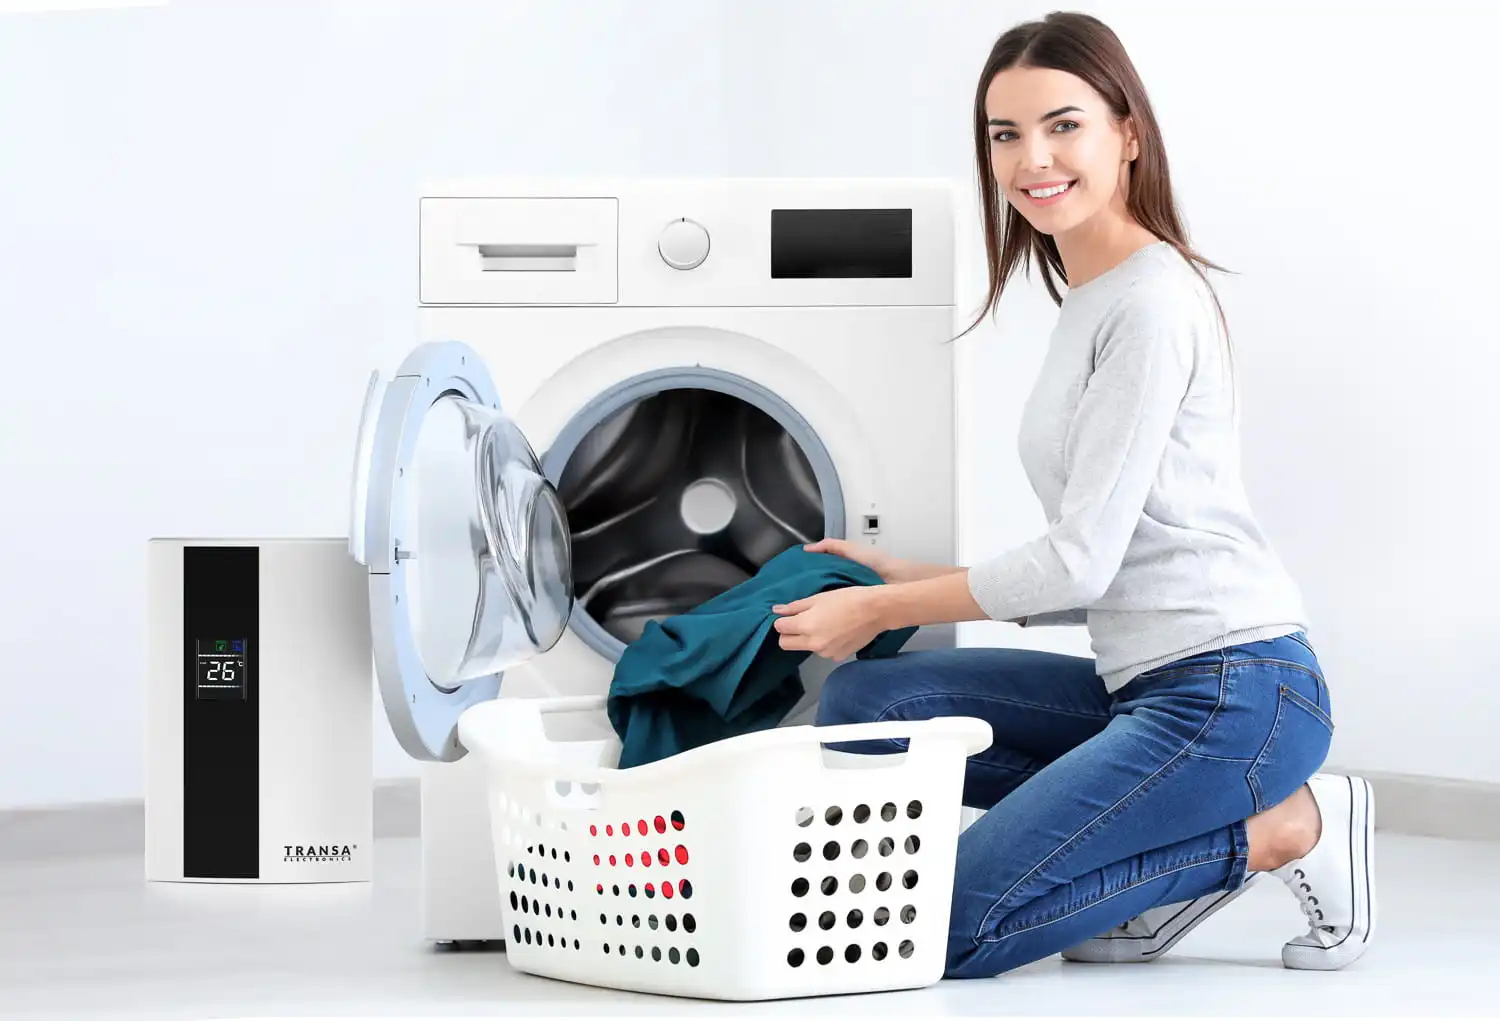 طرز استفاده صحیح از ماشین لباسشویی ها چیست؟ + افزایش طول عمر